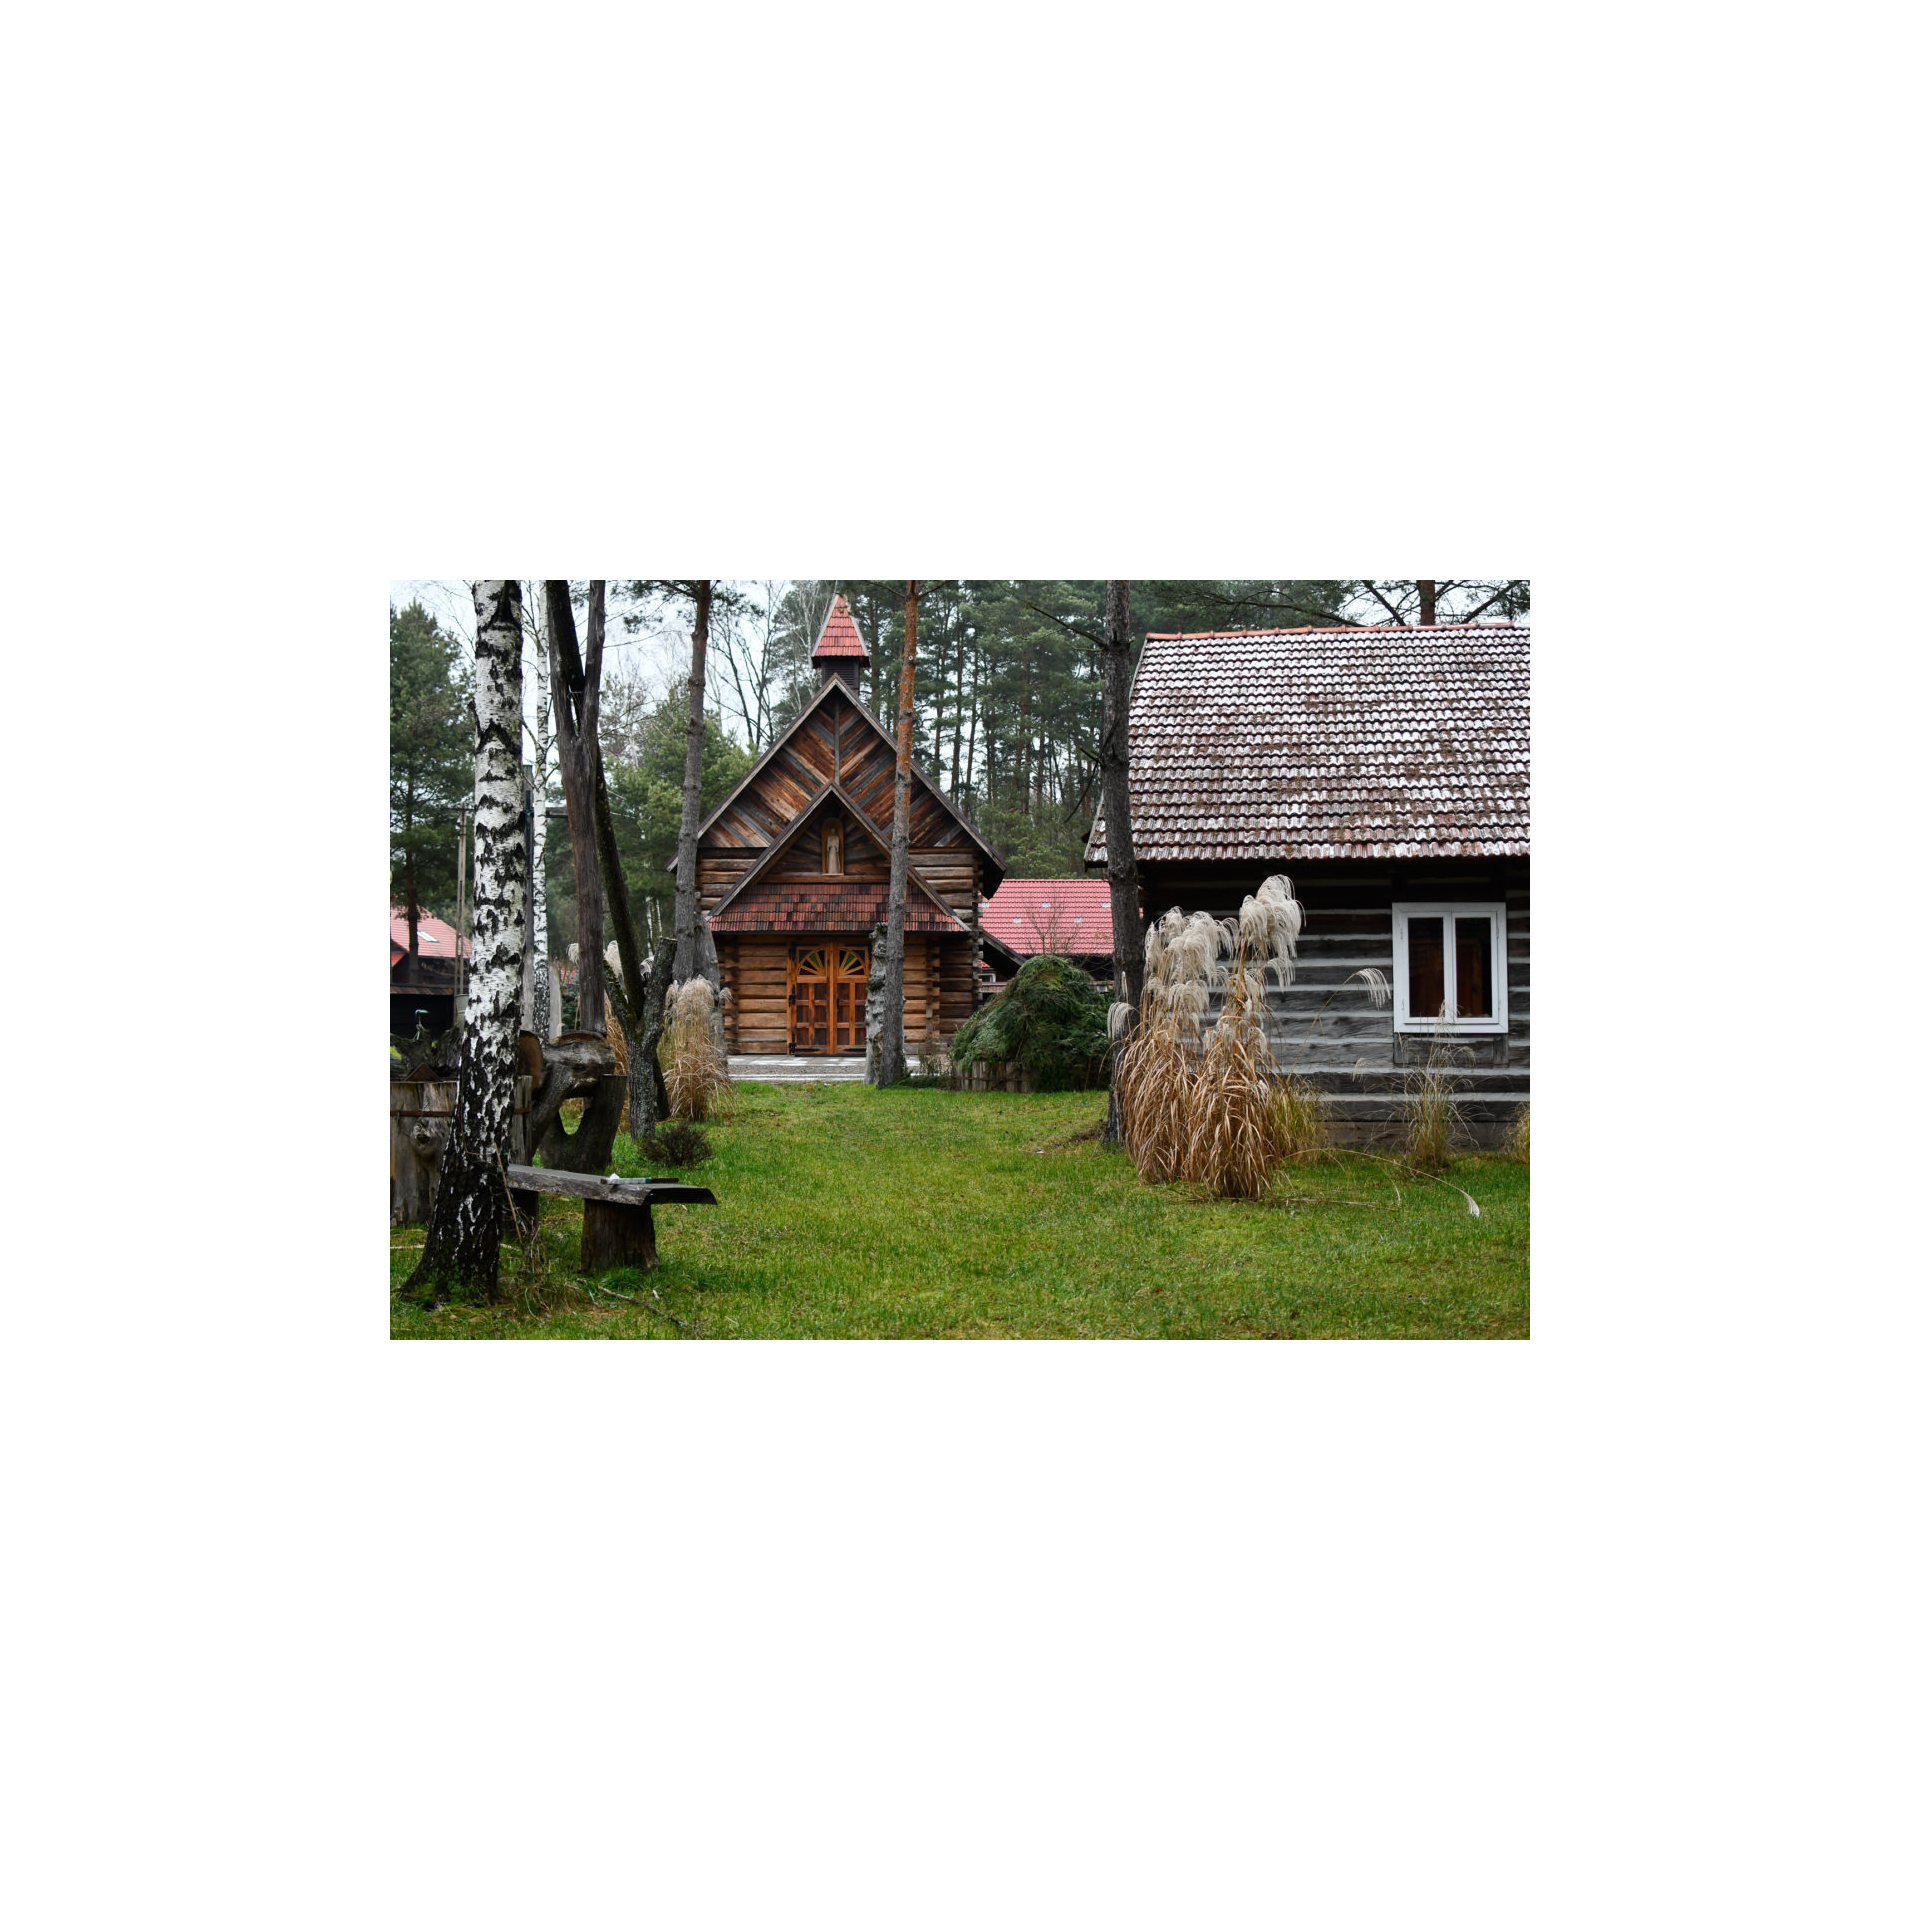 Drewniany kościół z wieżyczką i czerwonym dachem na zielonej trawie w otoczeniu drewnianych budynków i drzew